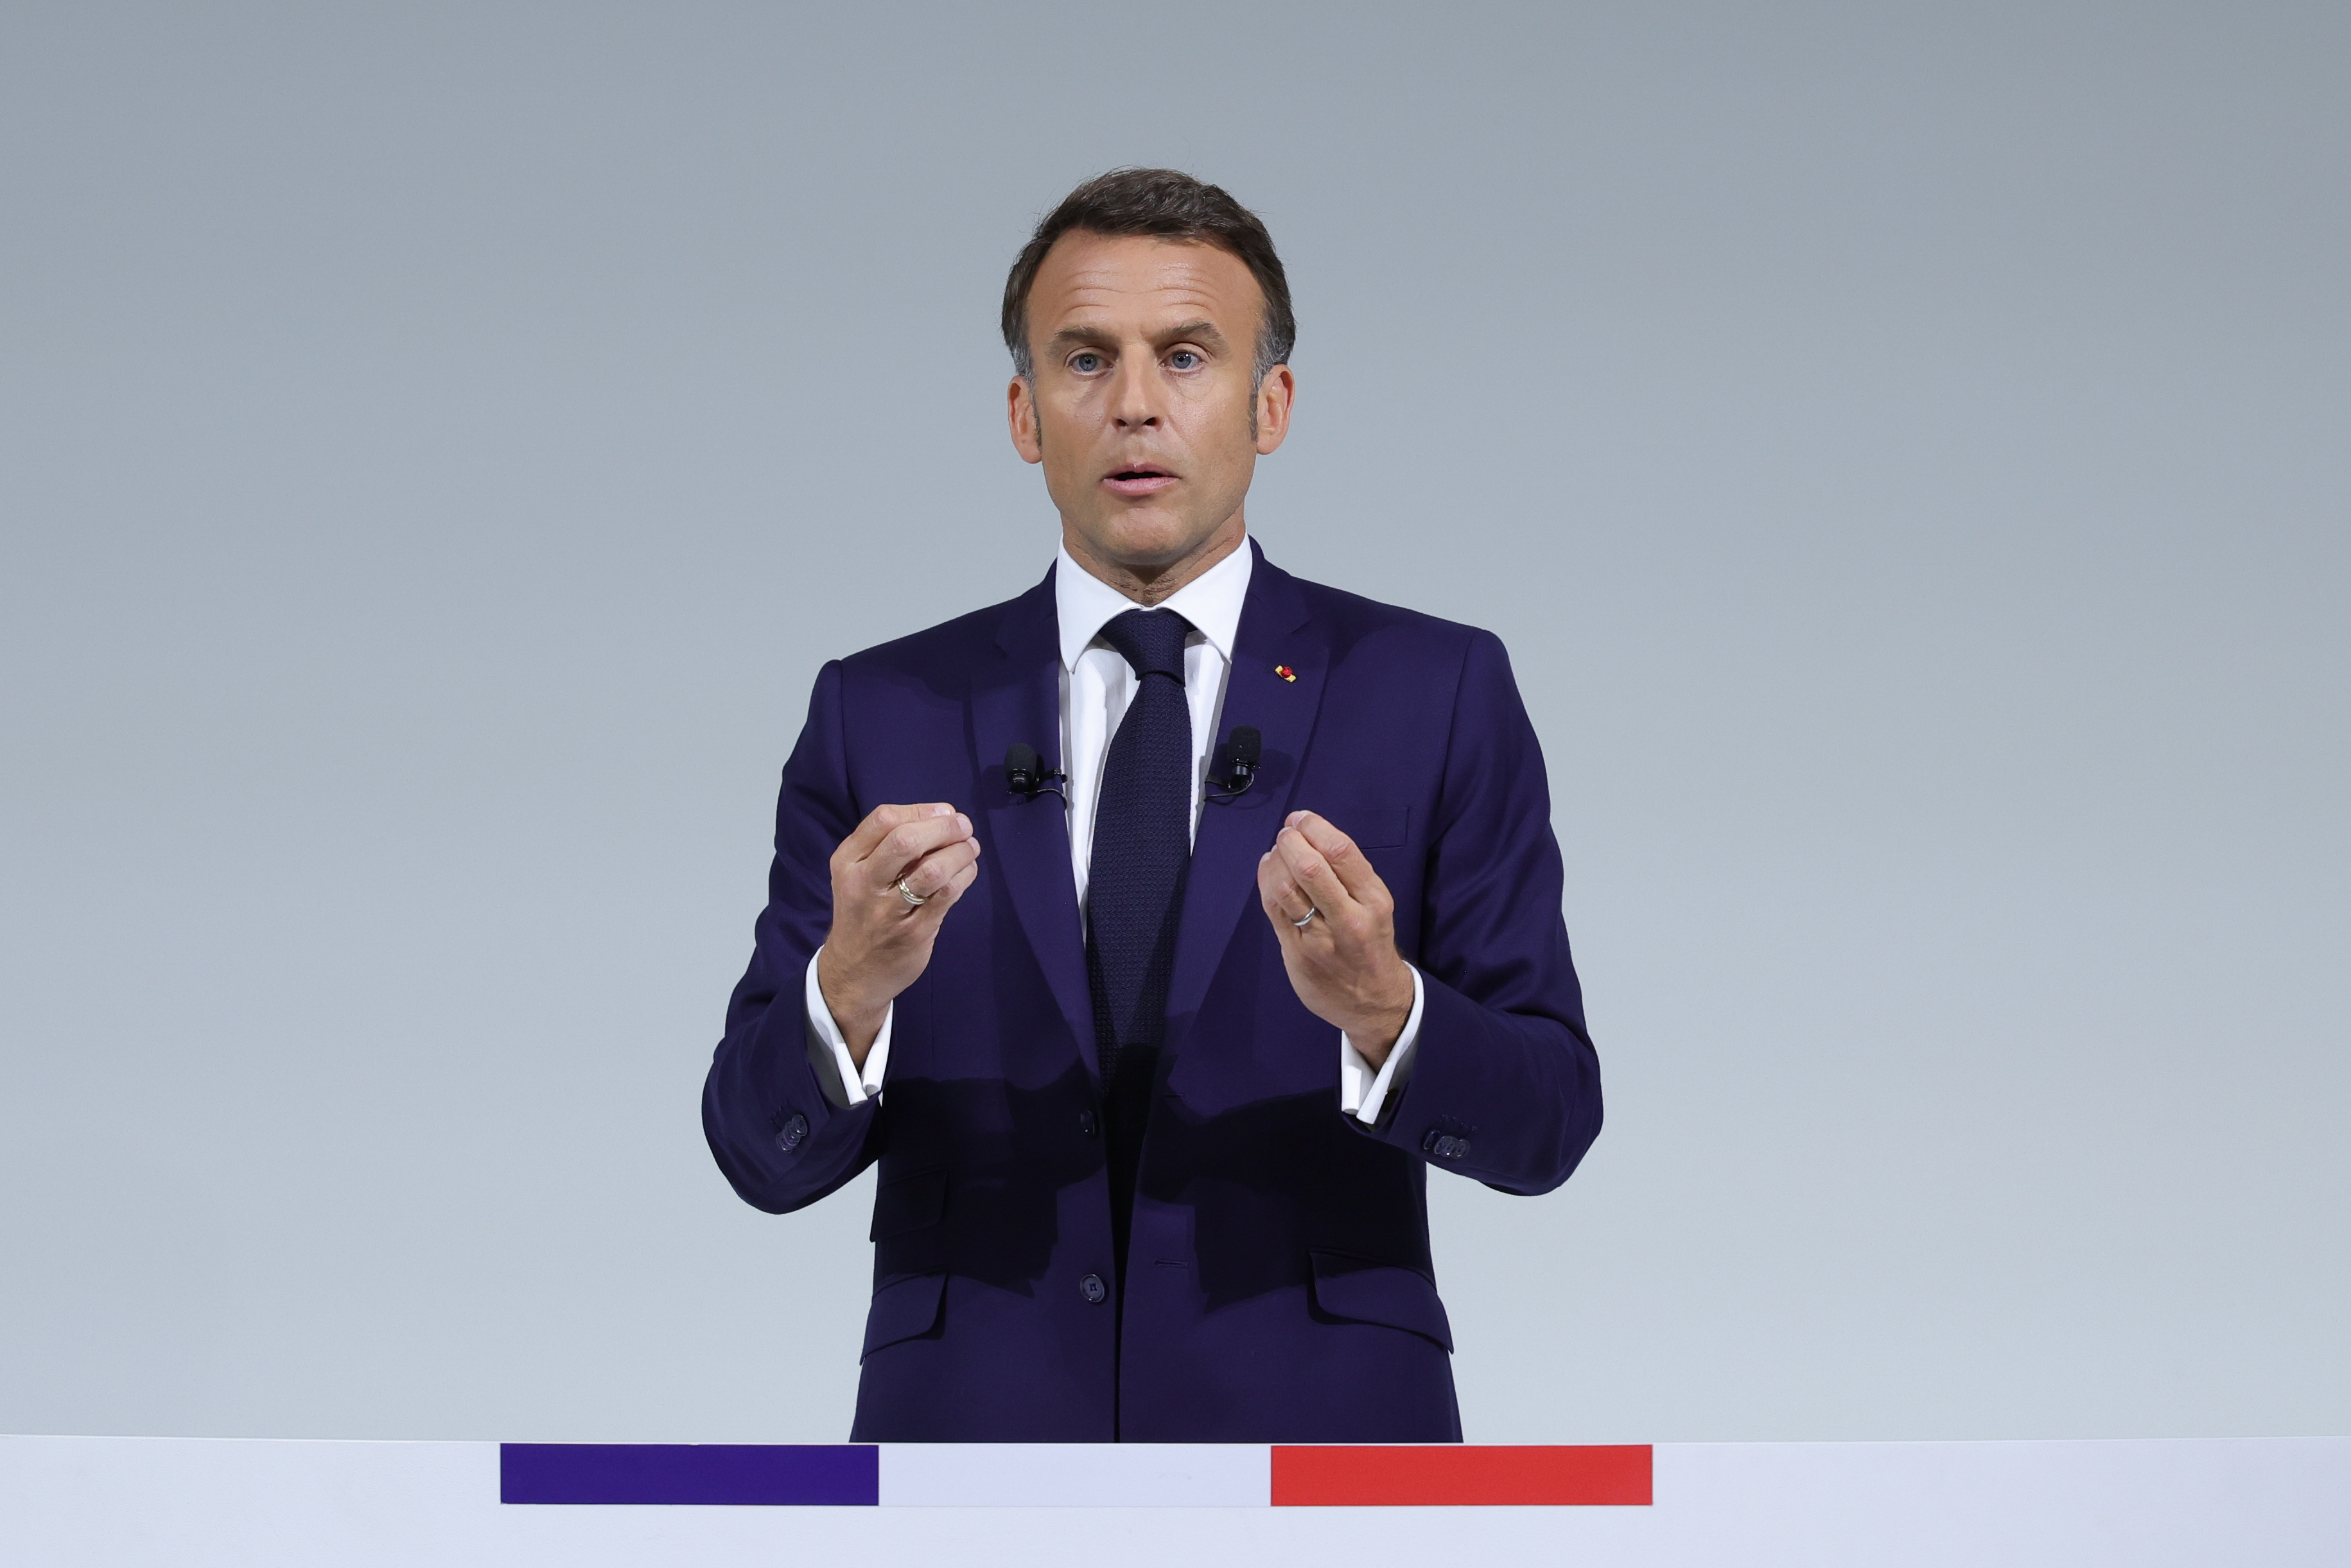 En France, le président Emmanuel Macron risque d'être mis à la dérive par la montée du soutien au parti de droite de Marine Le Pen.